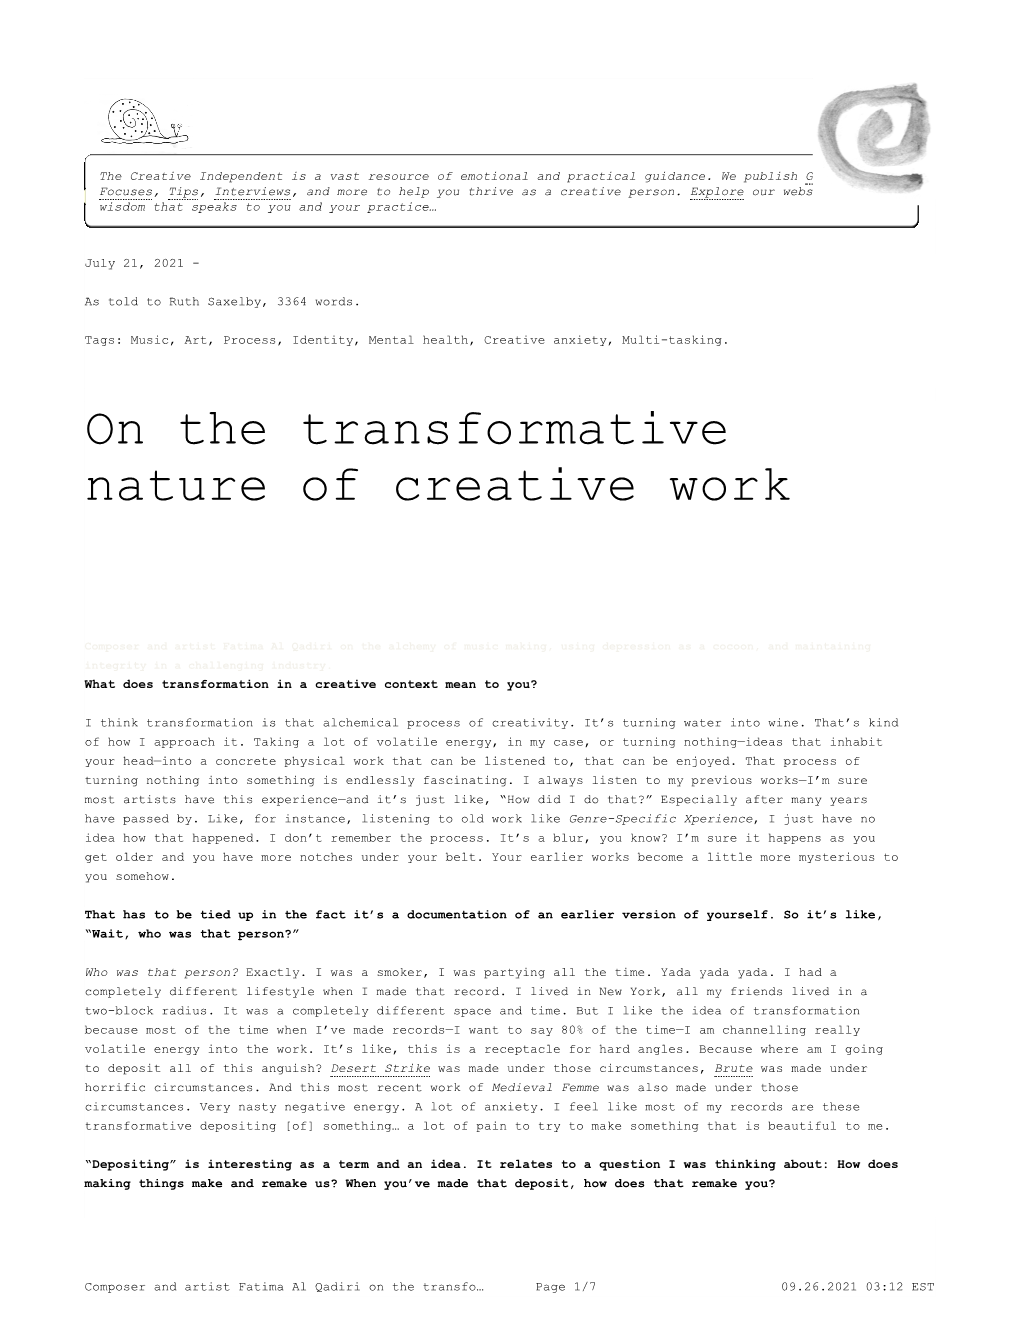 Composer and Artist Fatima Al Qadiri on the Transformative Nature of Creative Work